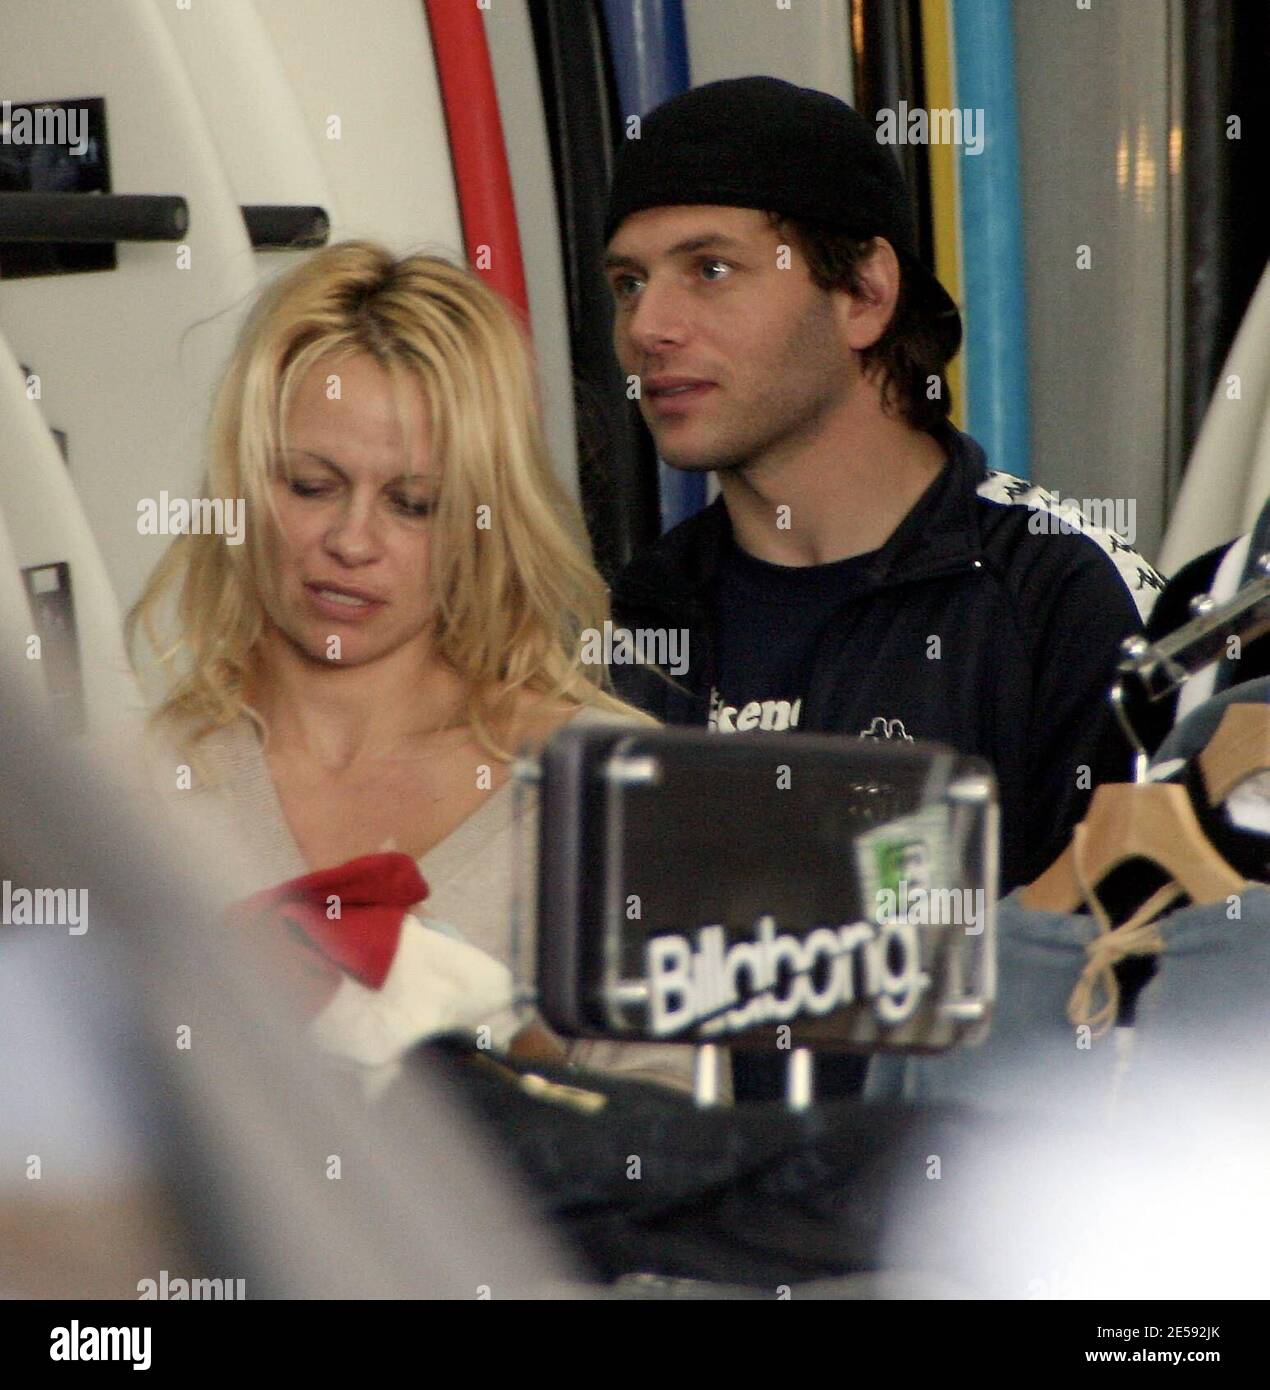 Exclusif !! Pamela Anderson et son mari Rick Salomon font des achats de  Noël pour les enfants dans un magasin de surf près de la maison d'Anderson.  L'actrice était toujours sans bague